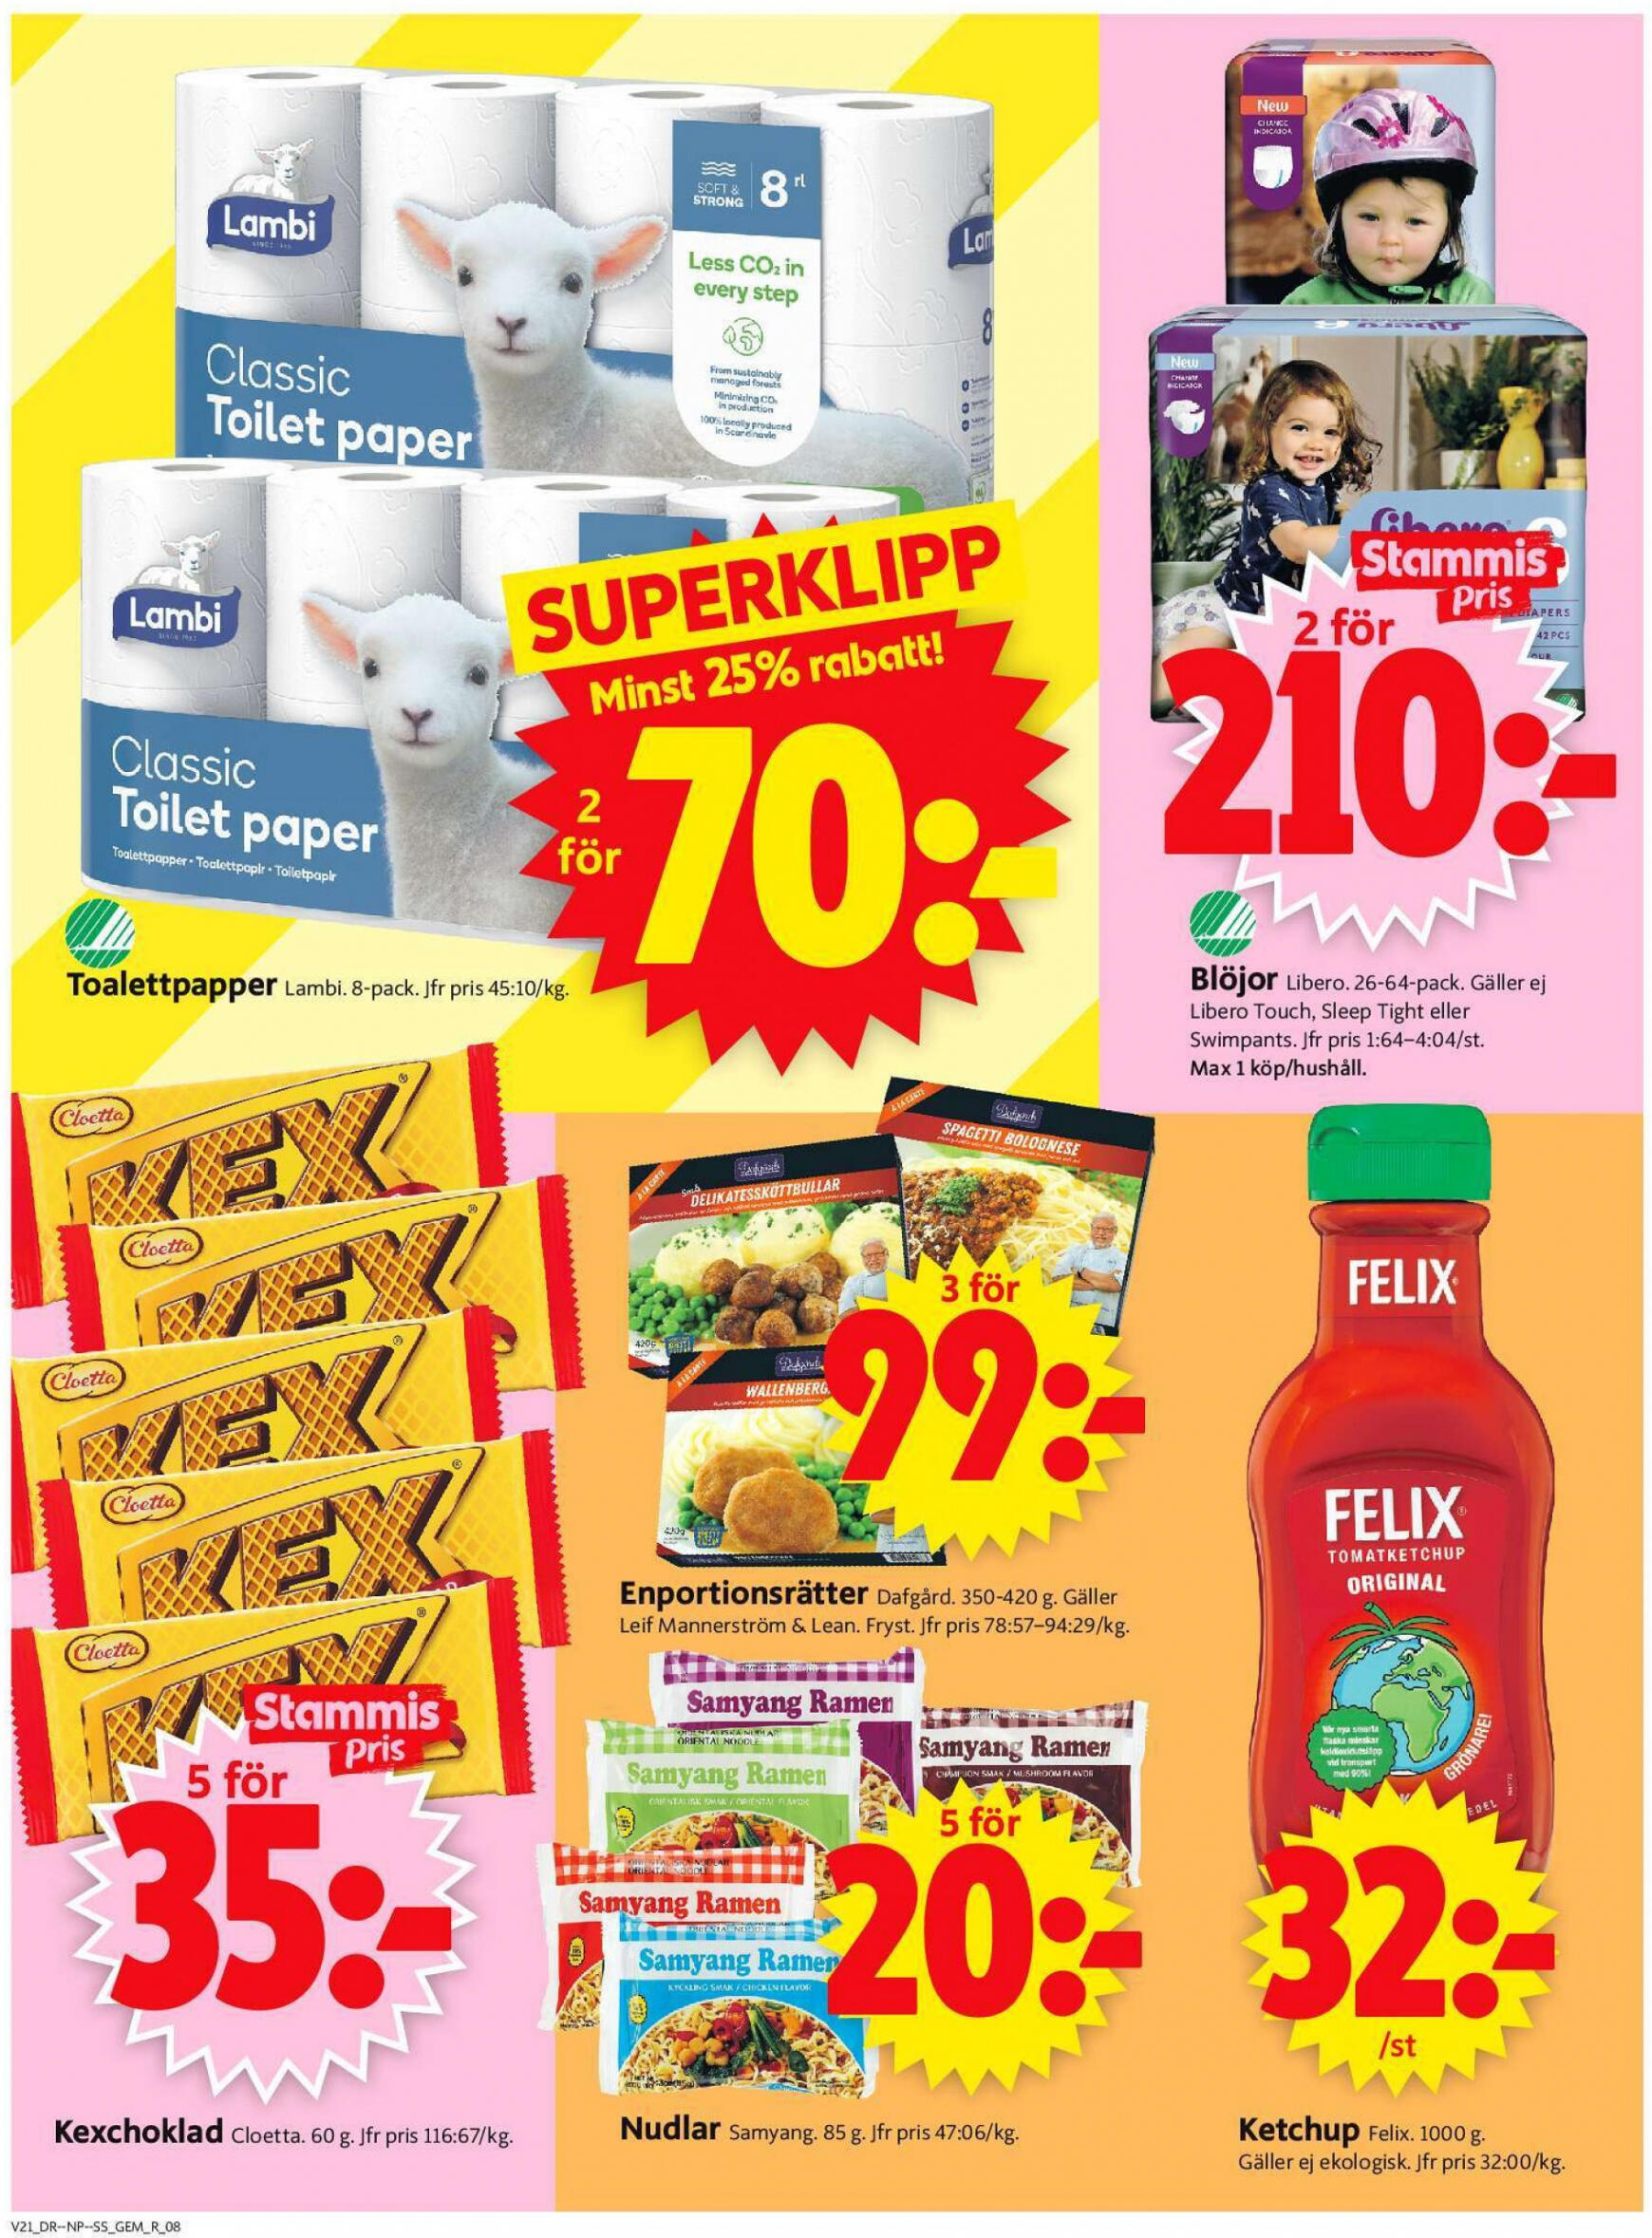 ica-supermarket - Flyer ICA Supermarket current 20.05. - 26.05. - page: 10